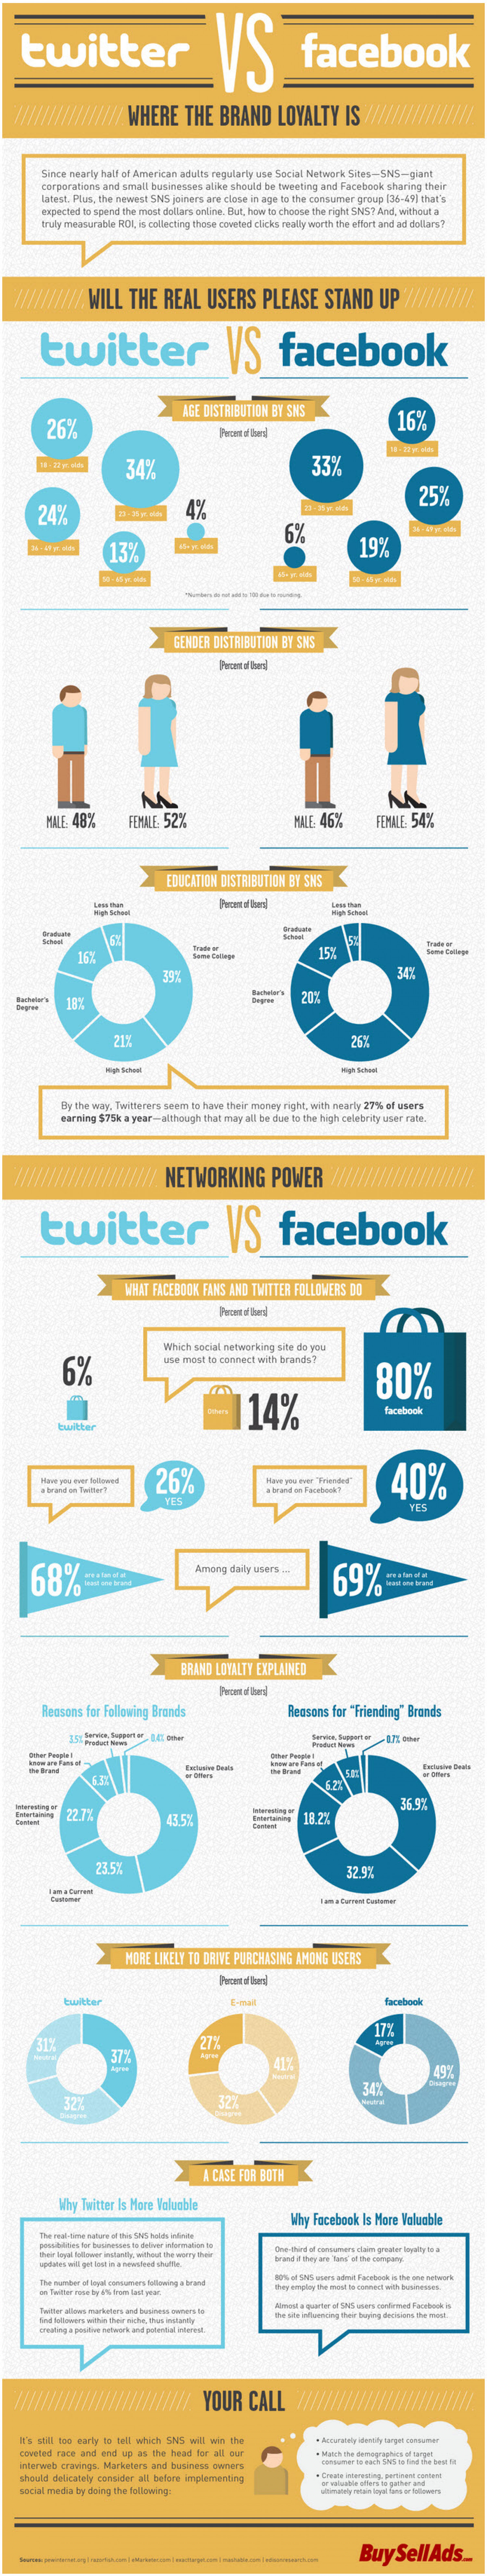 Twitter Follower Versus Facebook Fan Infographic